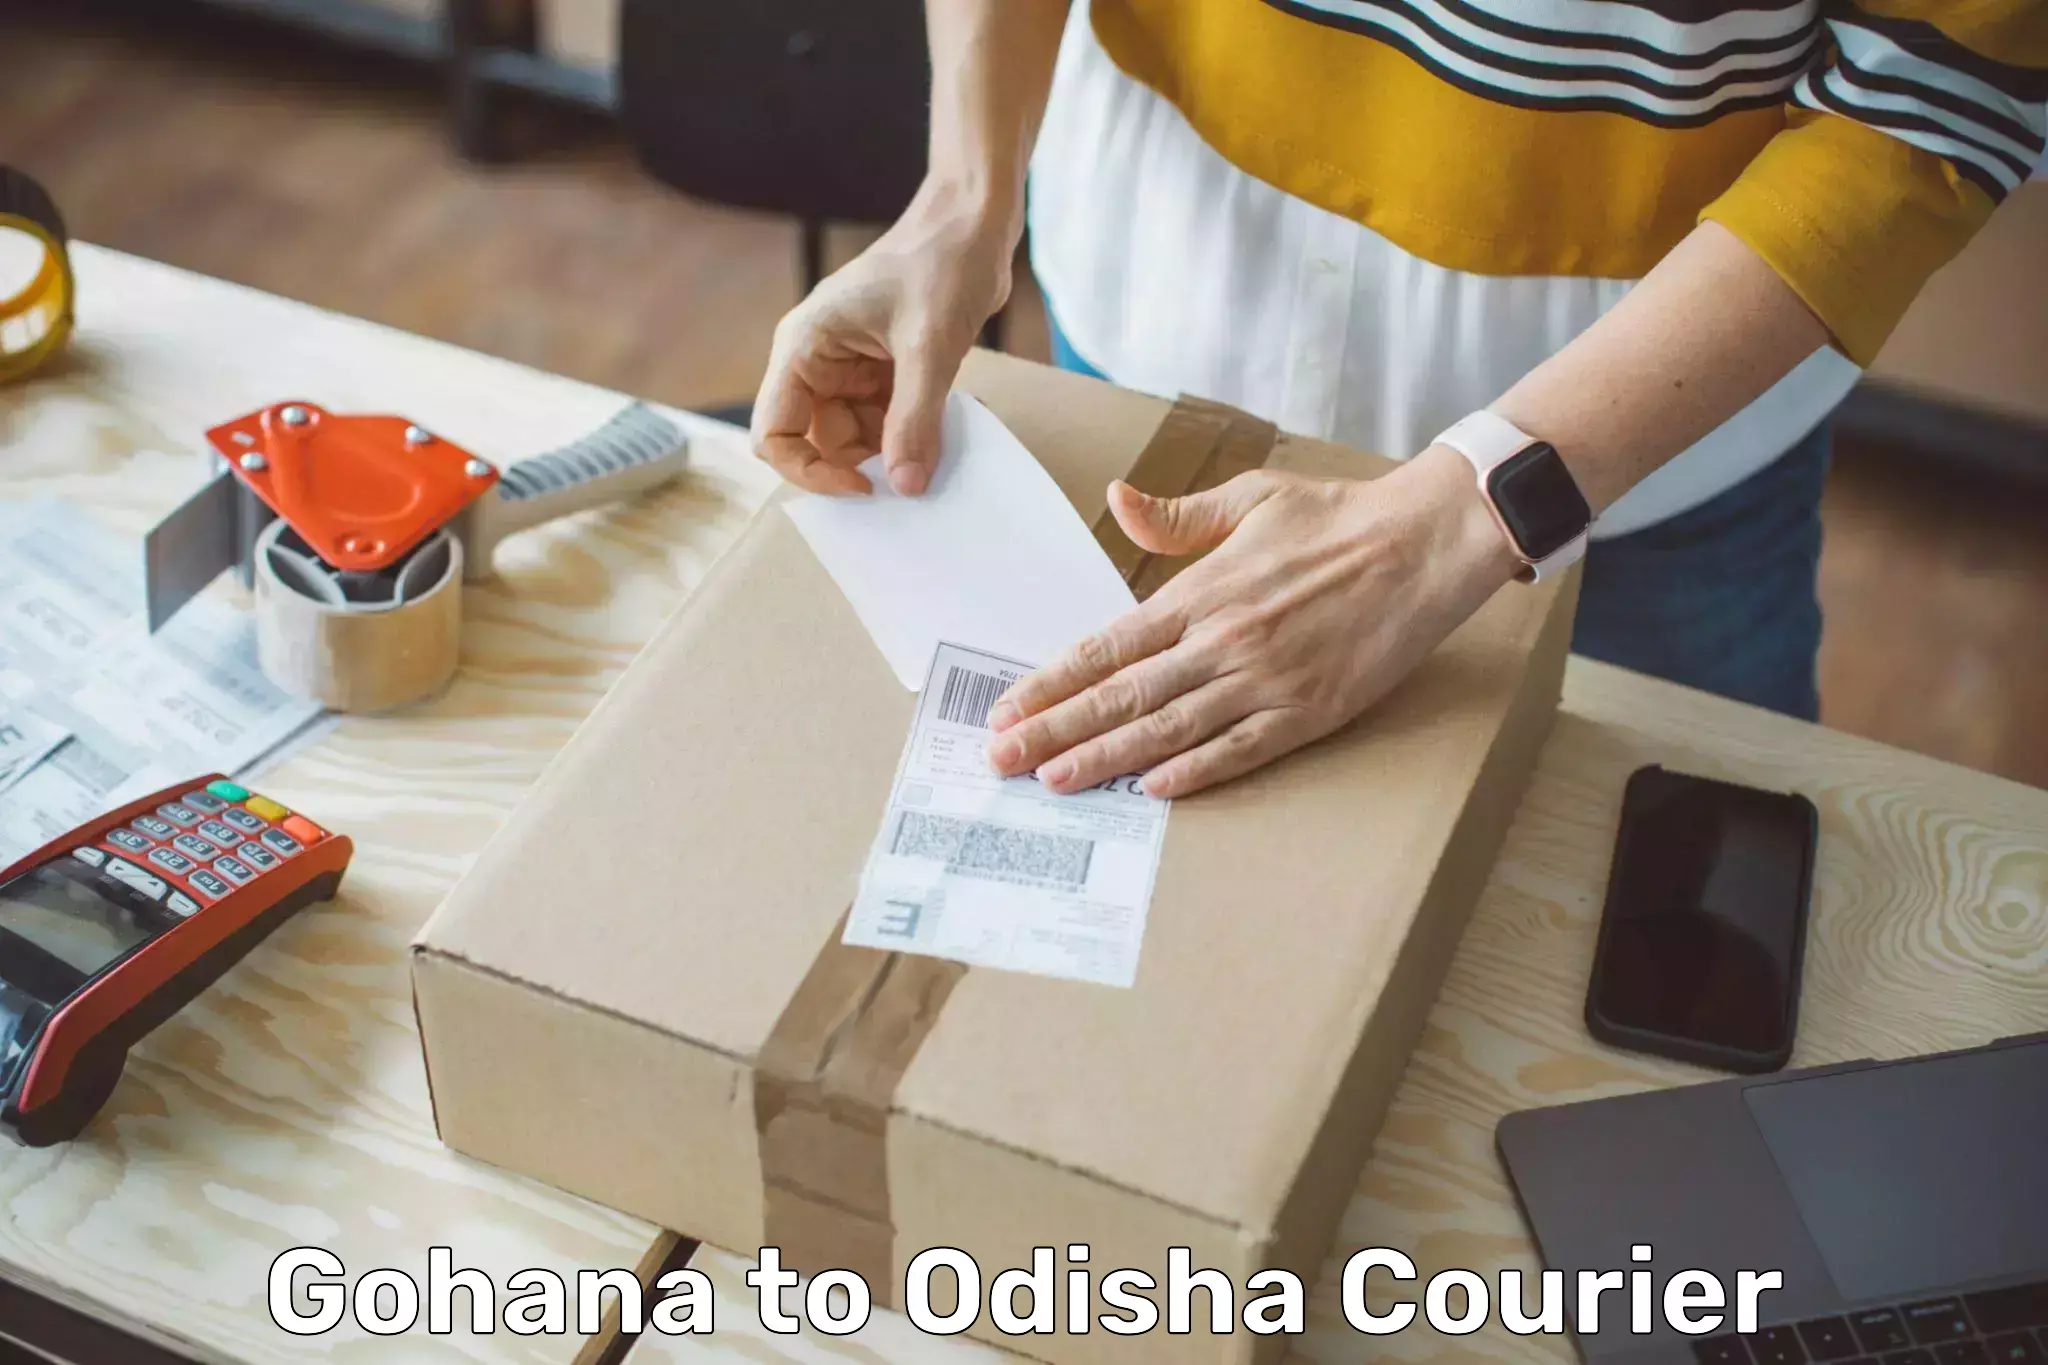 Same-day delivery solutions Gohana to Bangriposi